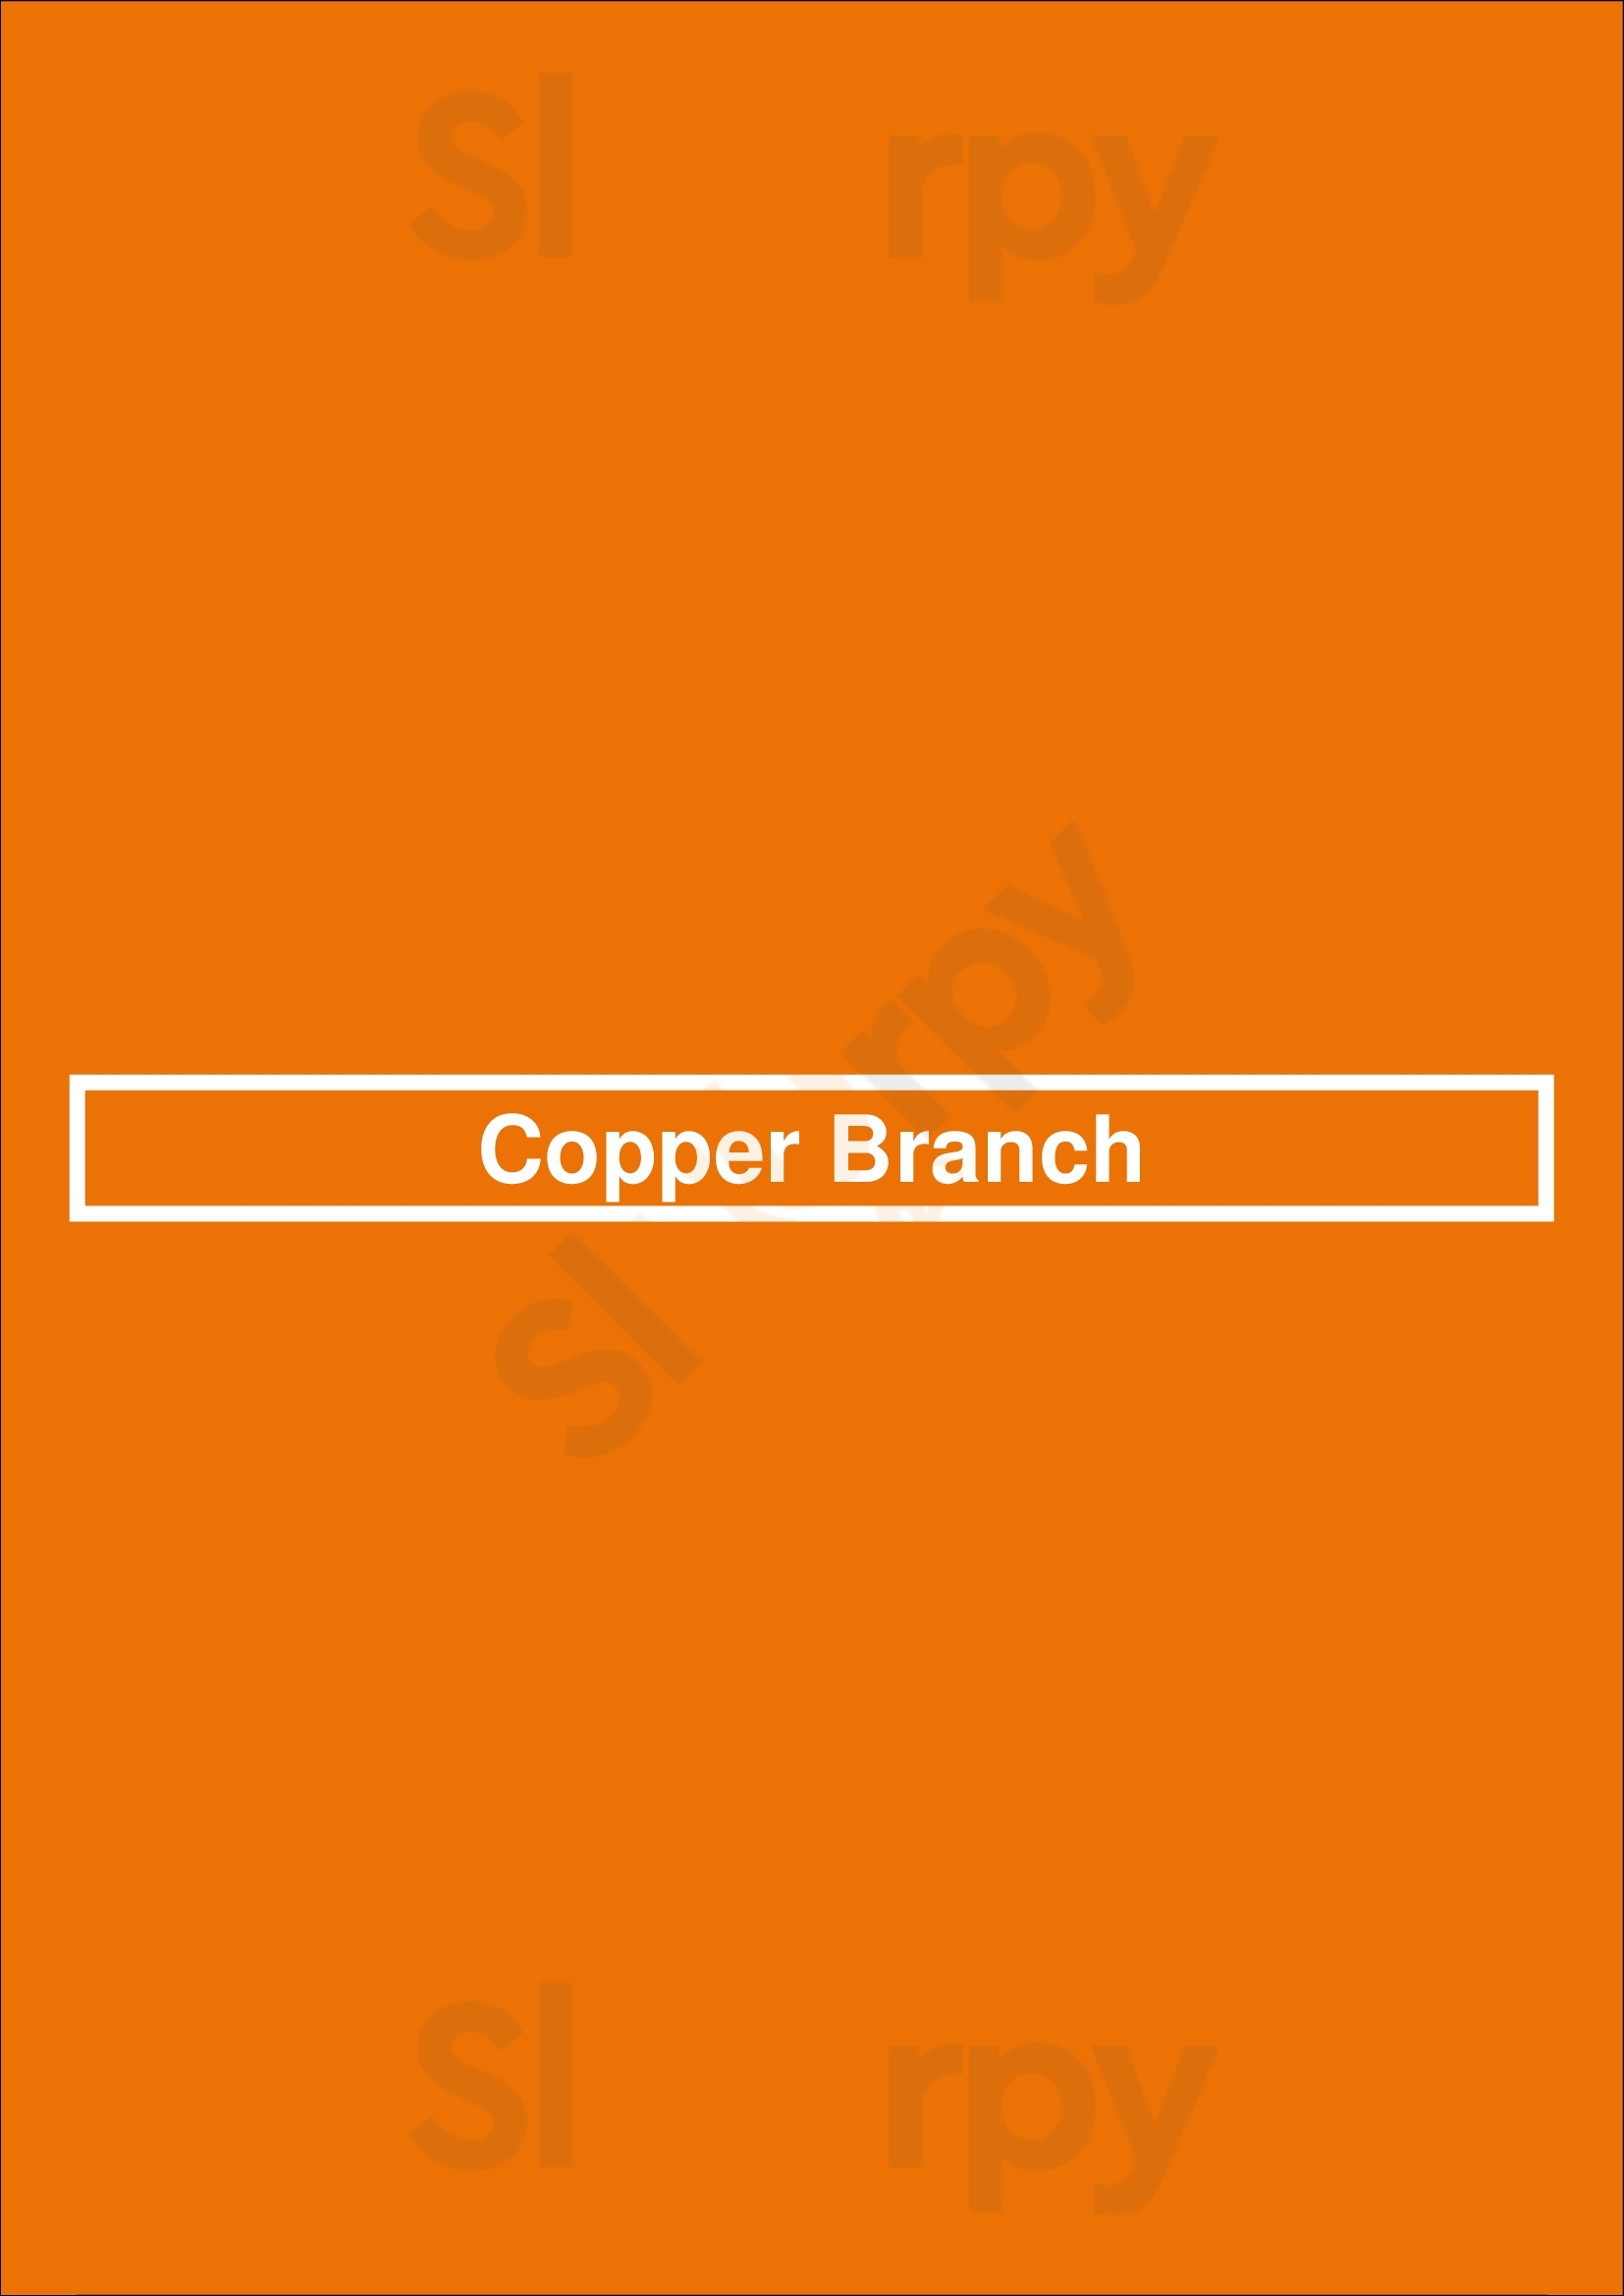 Copper Branch Newmarket Menu - 1